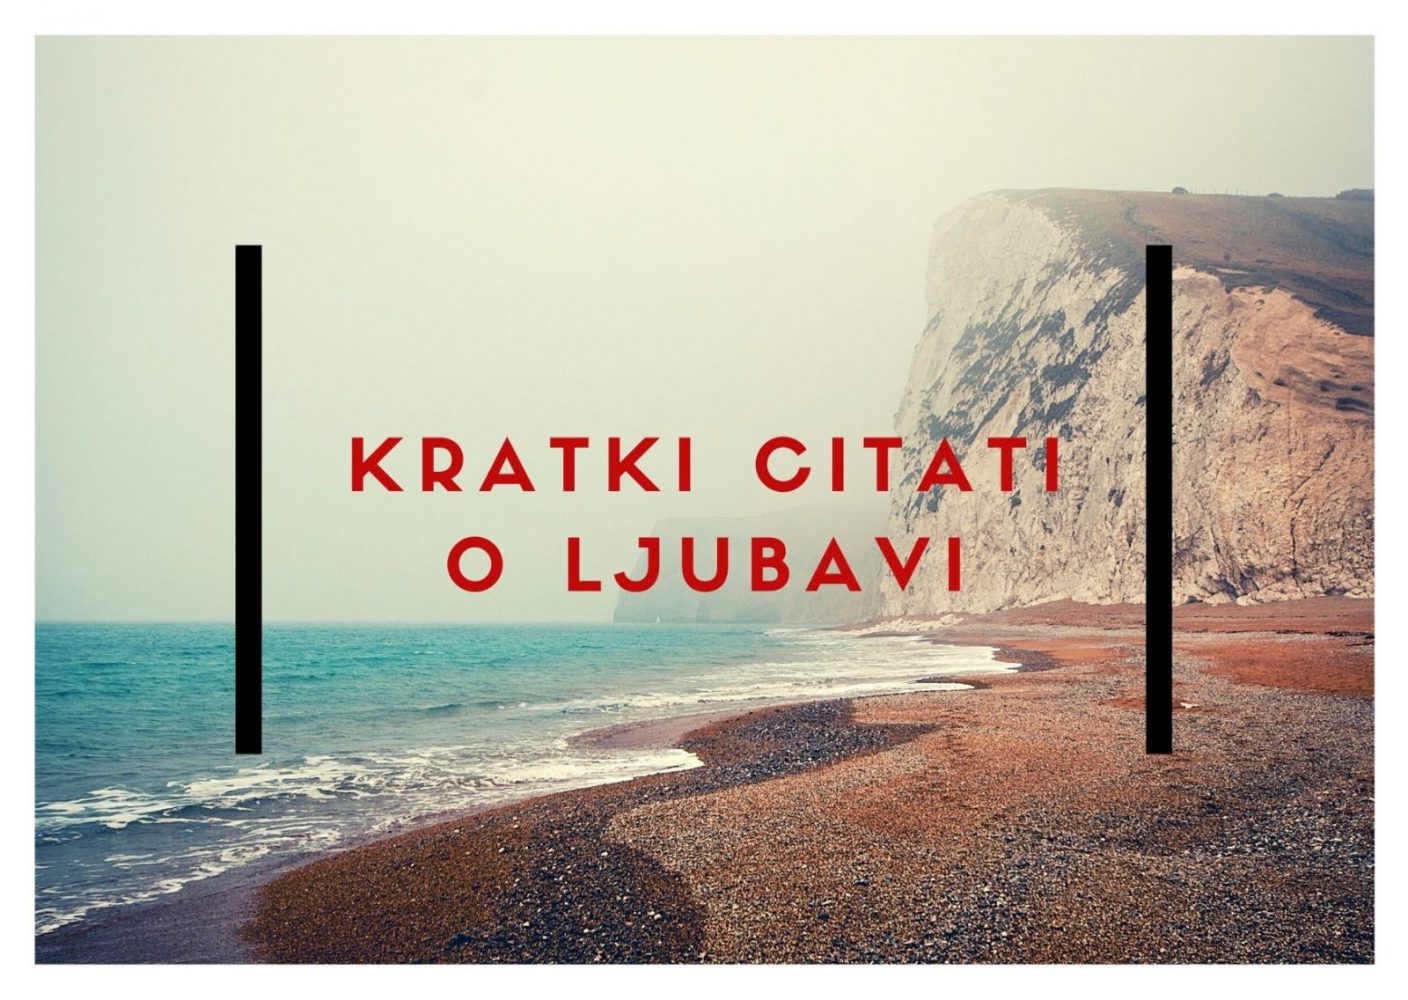 Hrvatski ljubavni stihovi